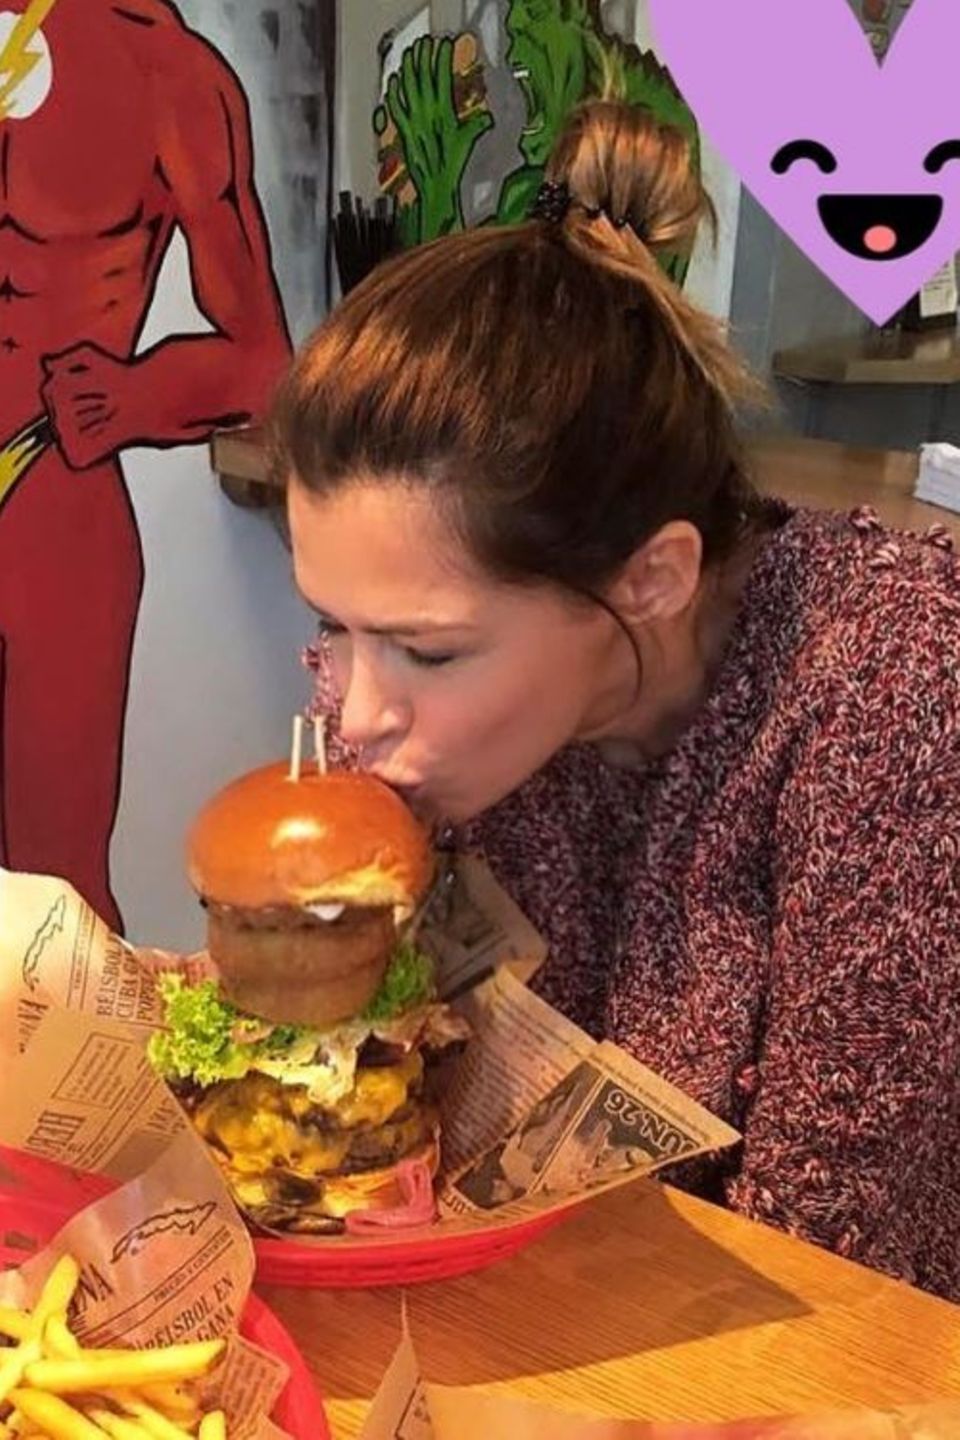 Augen zu und küssen! Sabia Boulahrouz ist von ihrem XXL-Burger offensichtlich so begeistert, dass sie dem Leckerbissen einen dicken Schmatzer aufdrückt. Lass es dir schmecken, liebe Sabia.